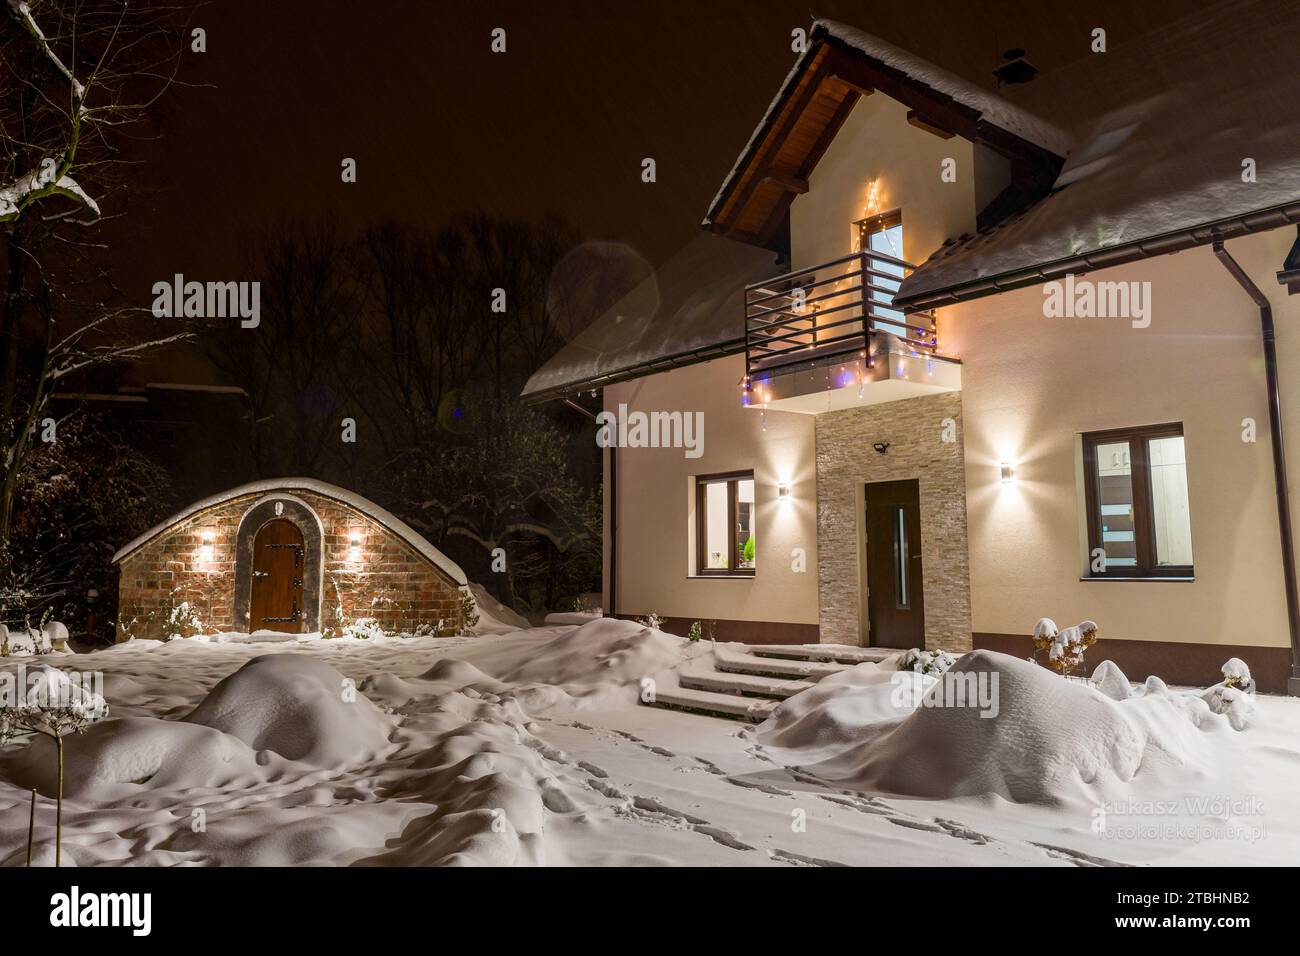 Einfamilienhaus mit Weinkeller, Einfamilienhaus in Winterlandschaft bei Nacht Stockfoto